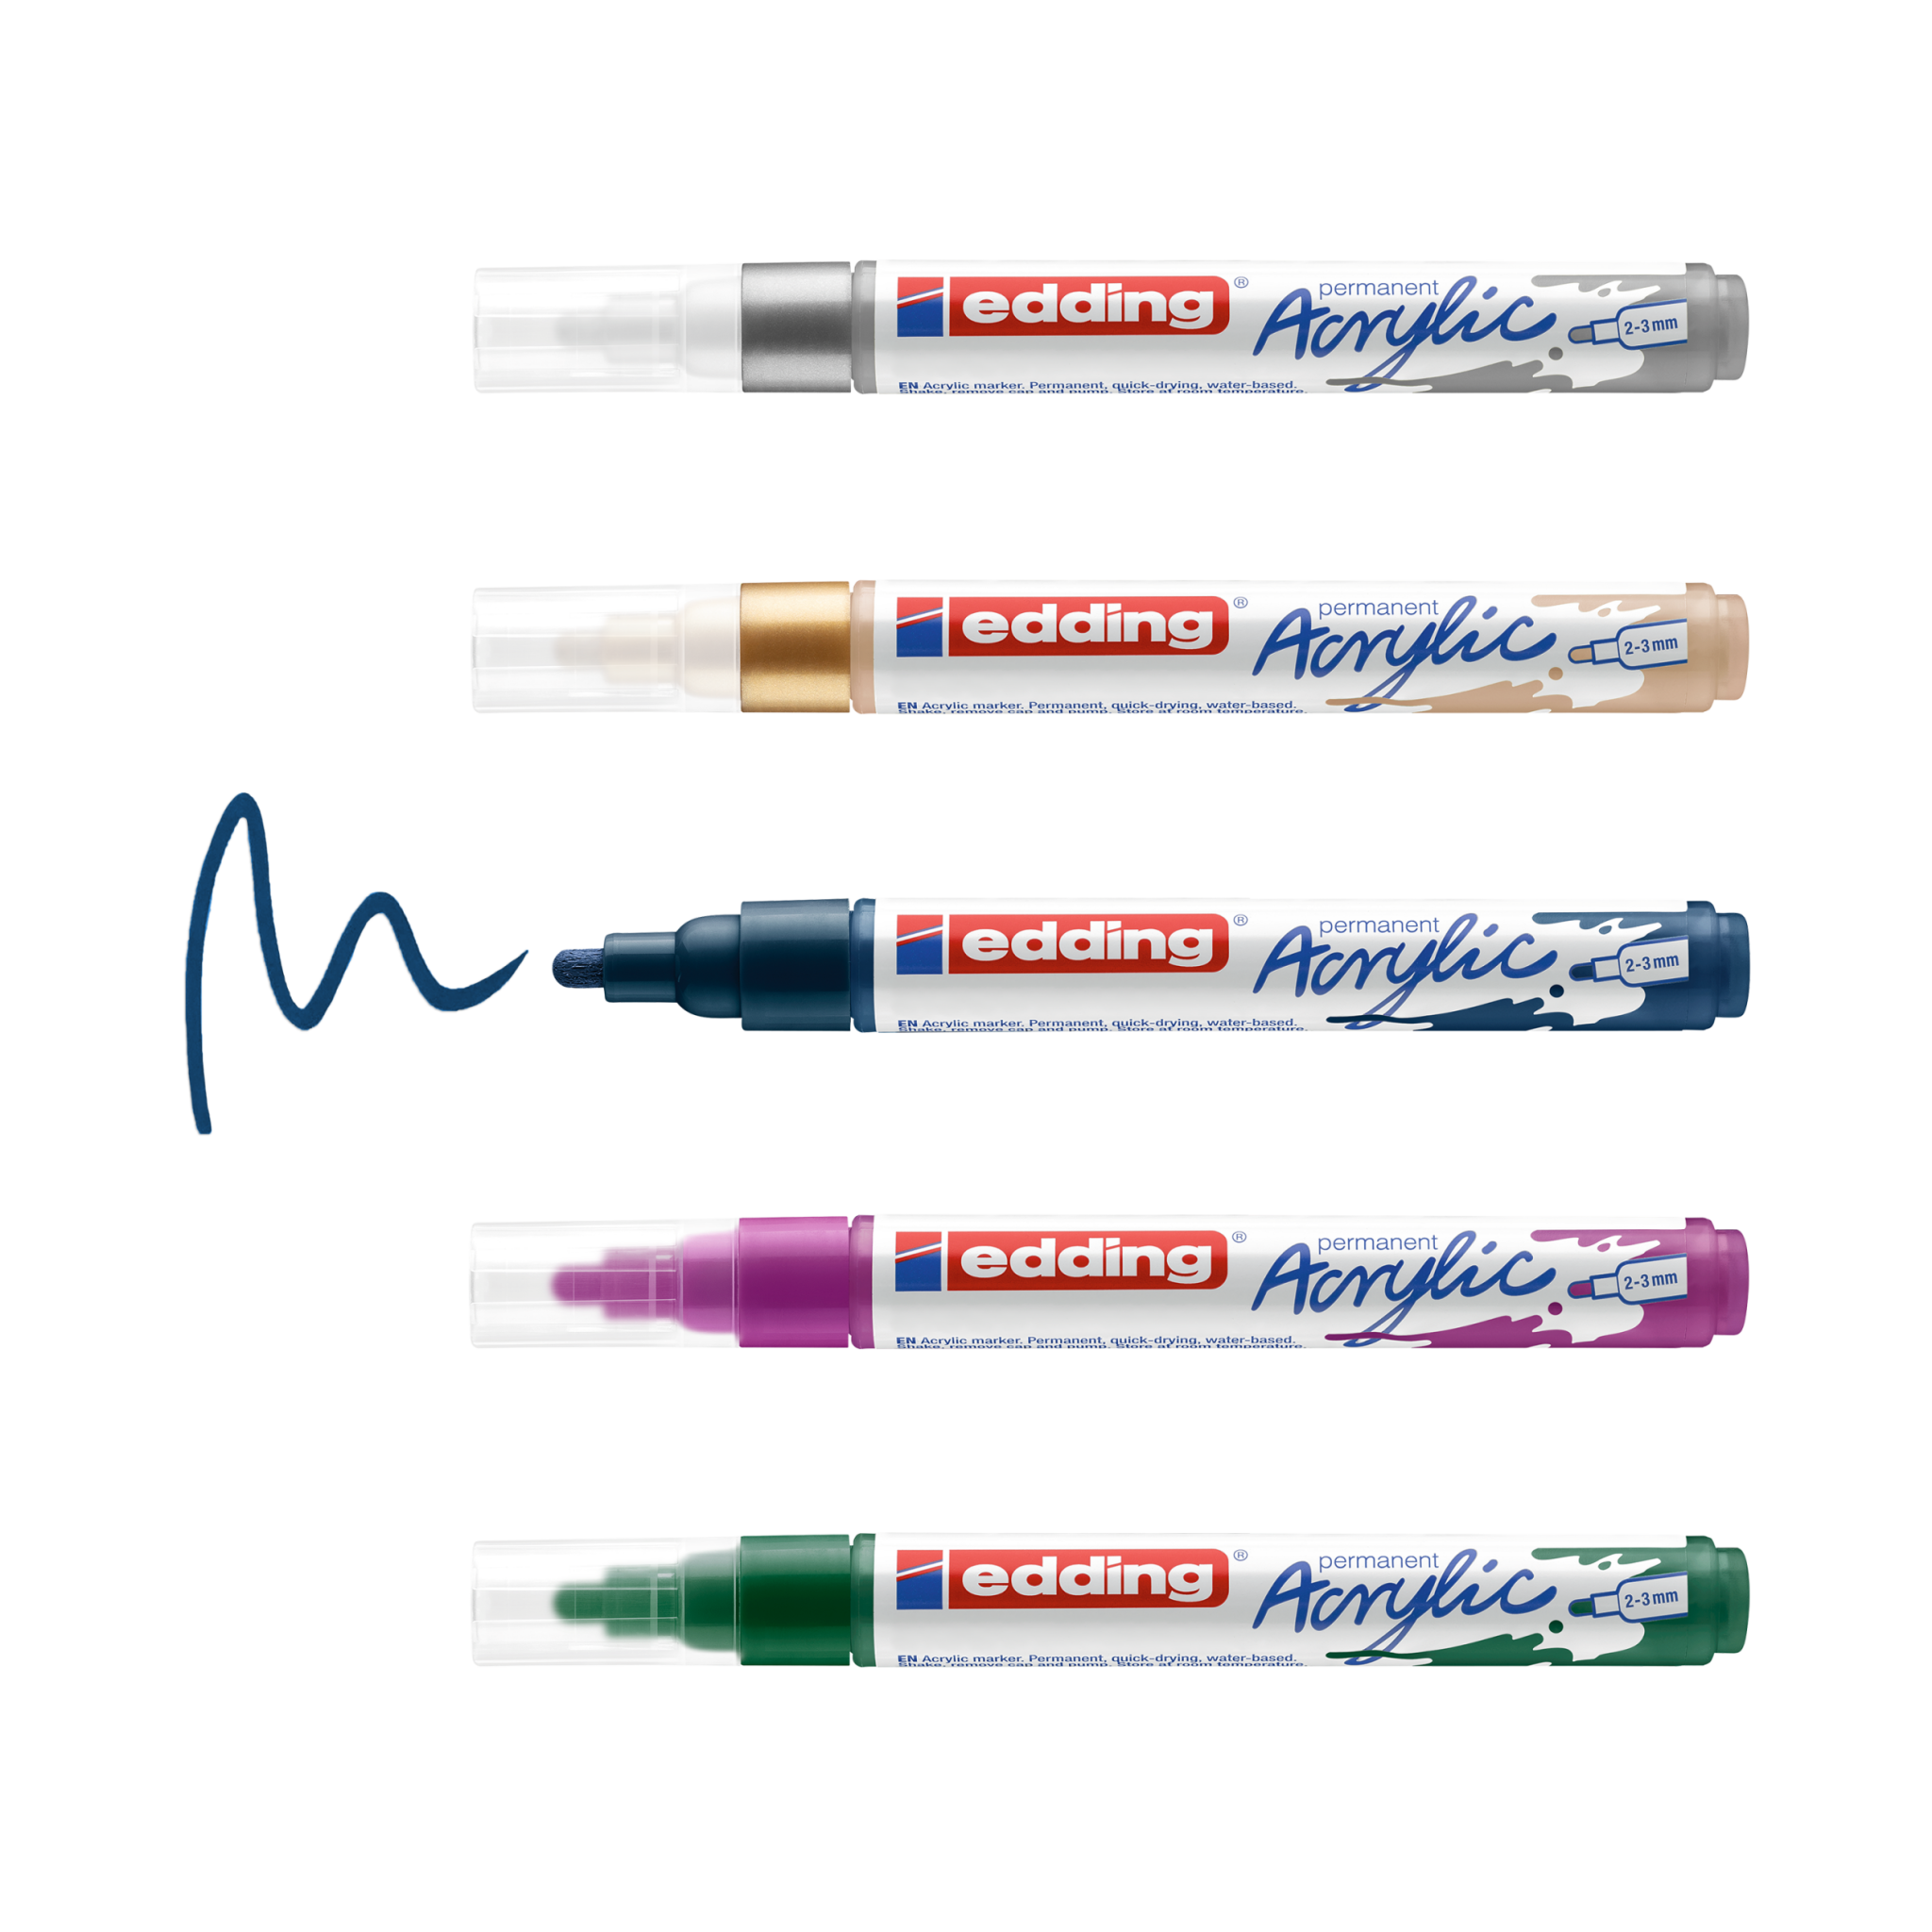 Eine Sammlung von edding 5100 Acrylmarkern der Marke Edding in verschiedenen Farben mit einem Muster von Acrylfarbe-Kritzelei unter einem von ihnen.